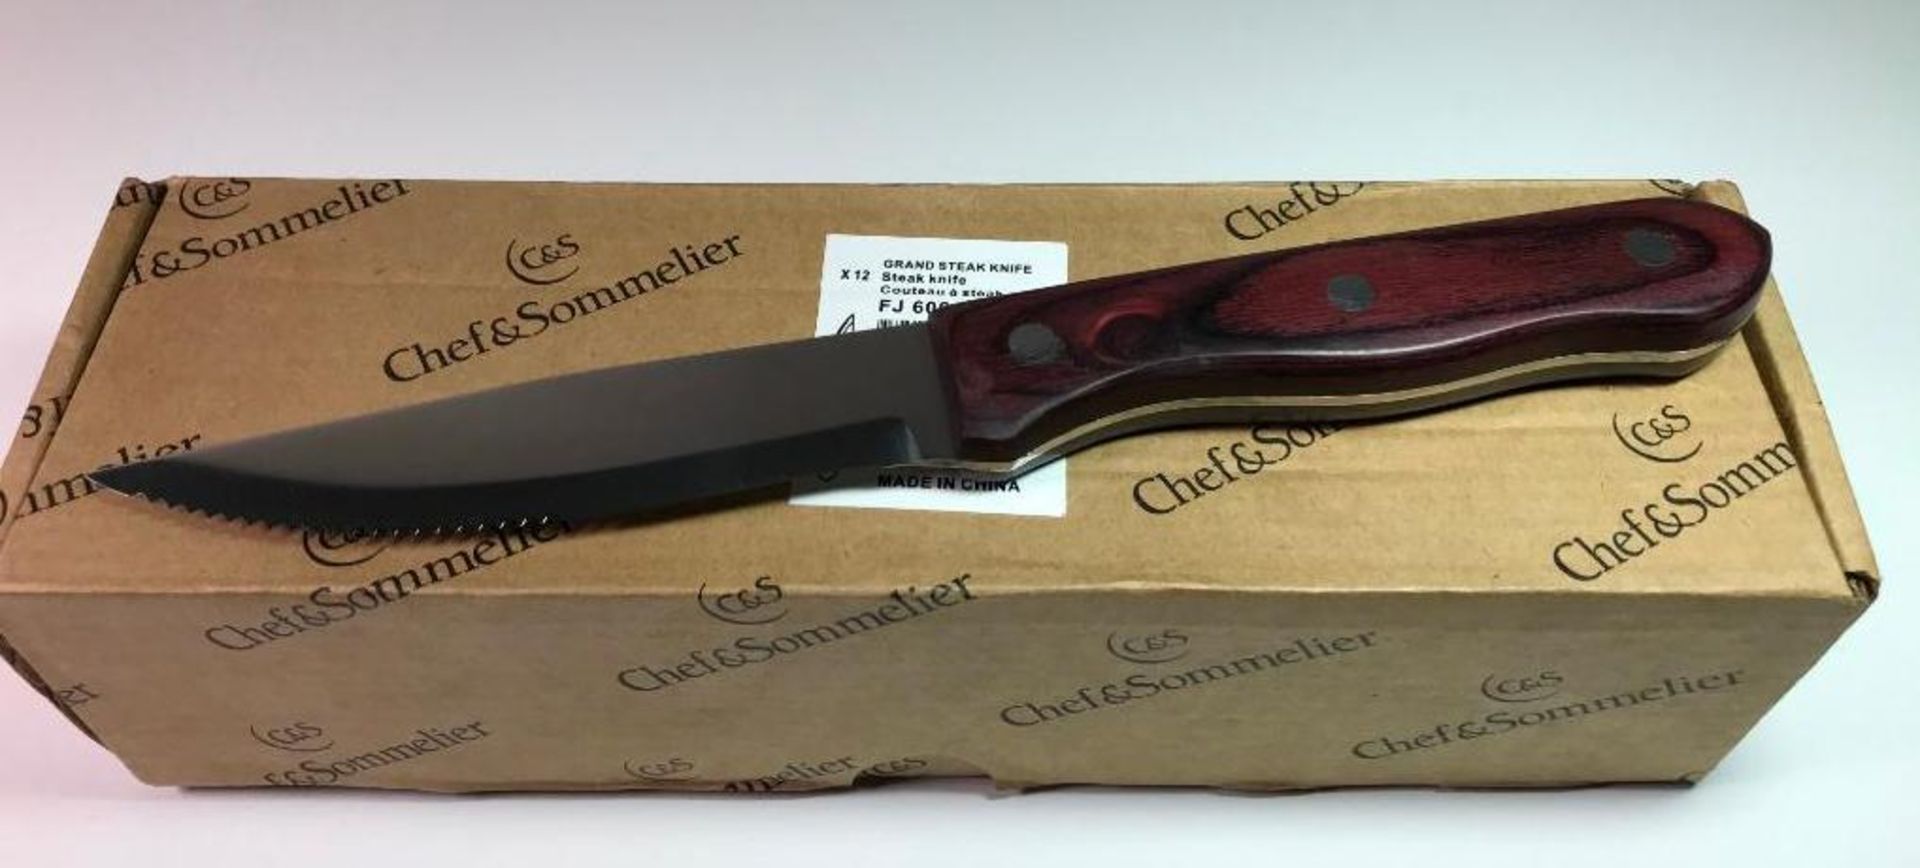 CHEF & SOMMELIER FJ606 GRAND 9" STEAK KNIFE - 12/CASE - NEW - Image 6 of 8